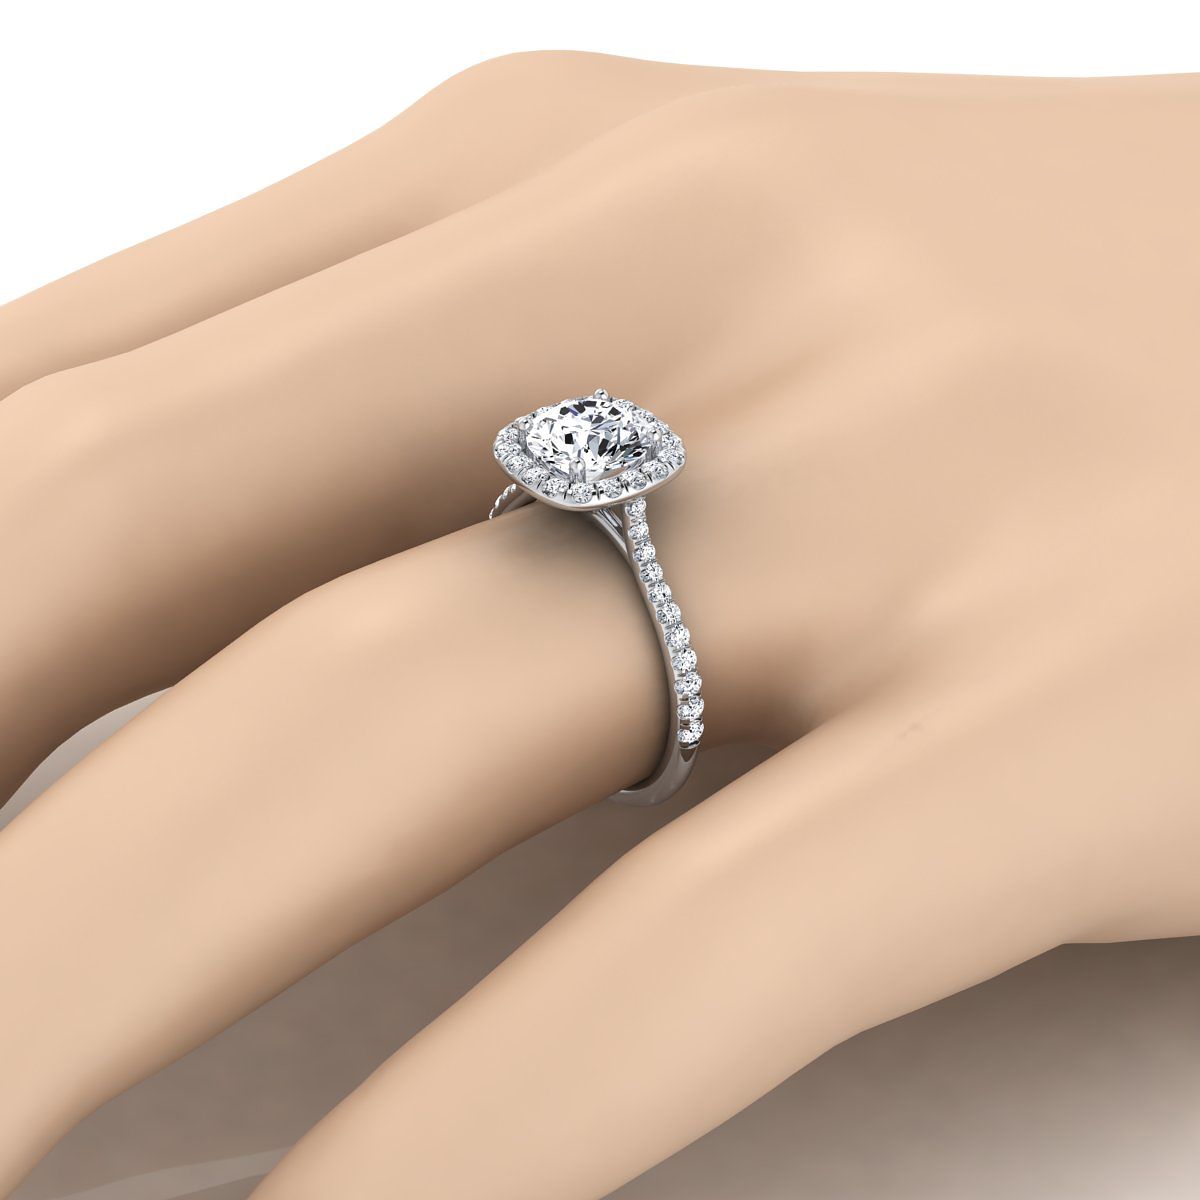 18K White Gold Round Brilliant Aquamarine Shared Prong Diamond Halo Engagement Ring -3/8ctw